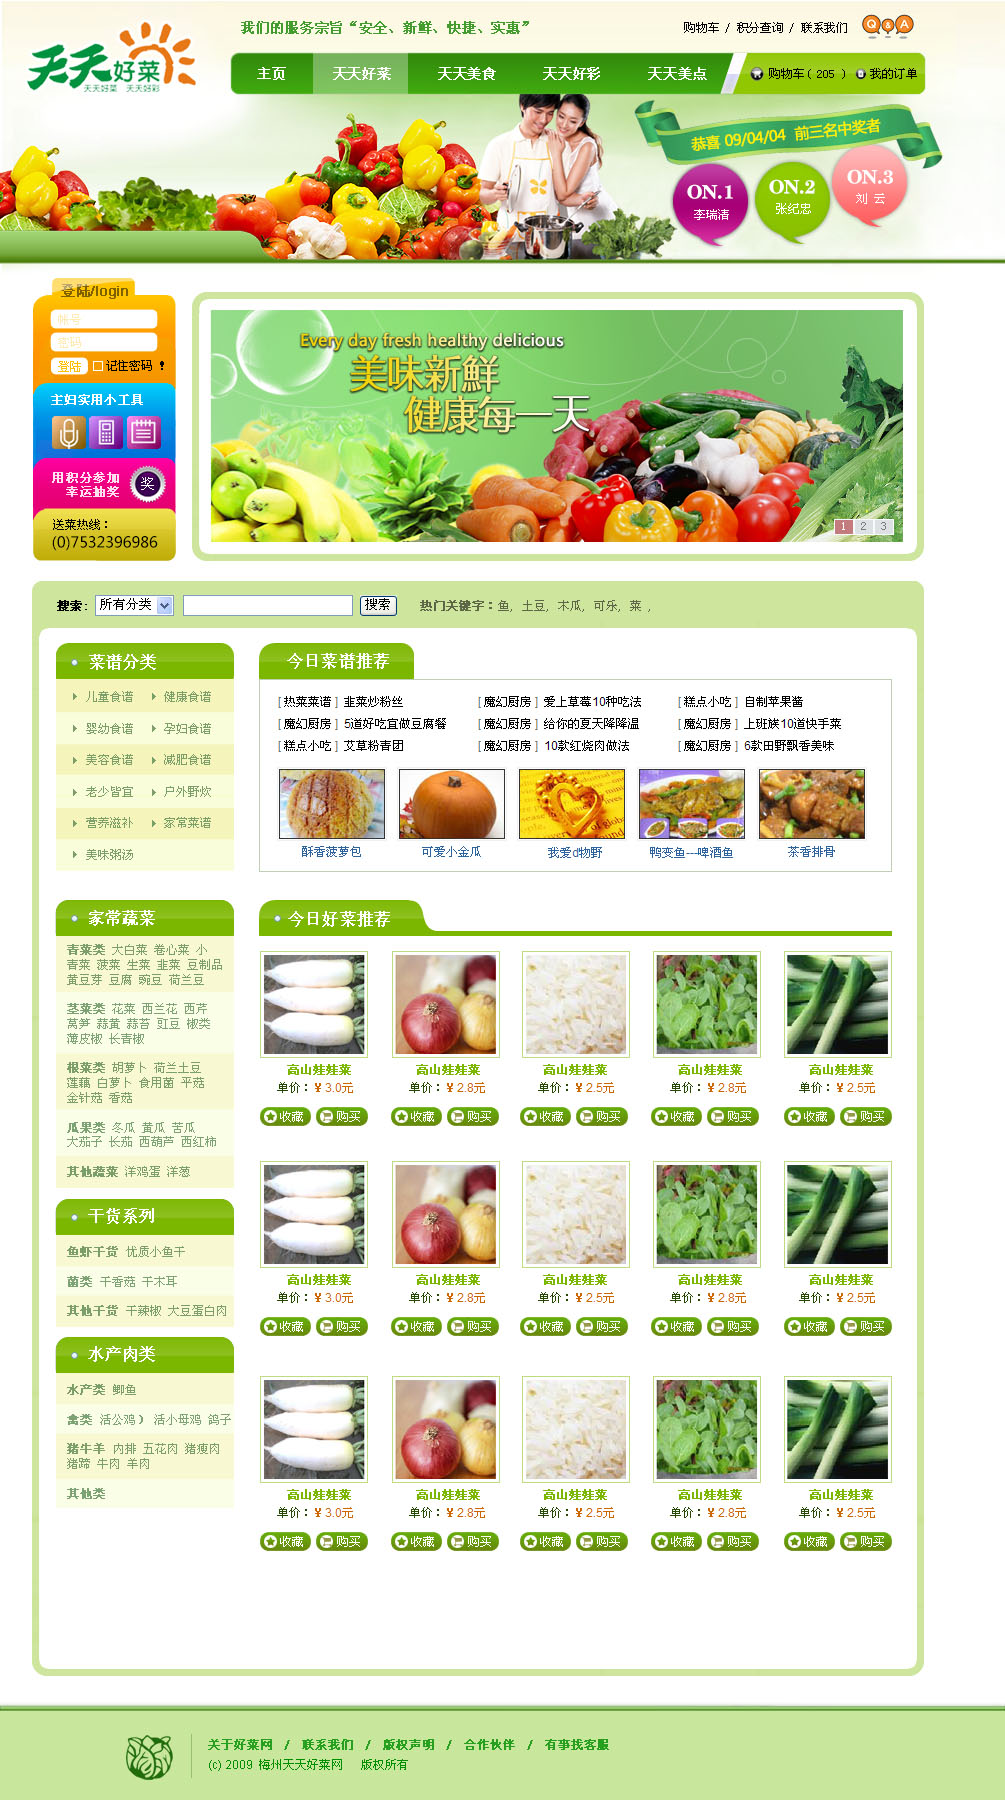 原创社区团配菜商城网站设计PSD网站模板源码